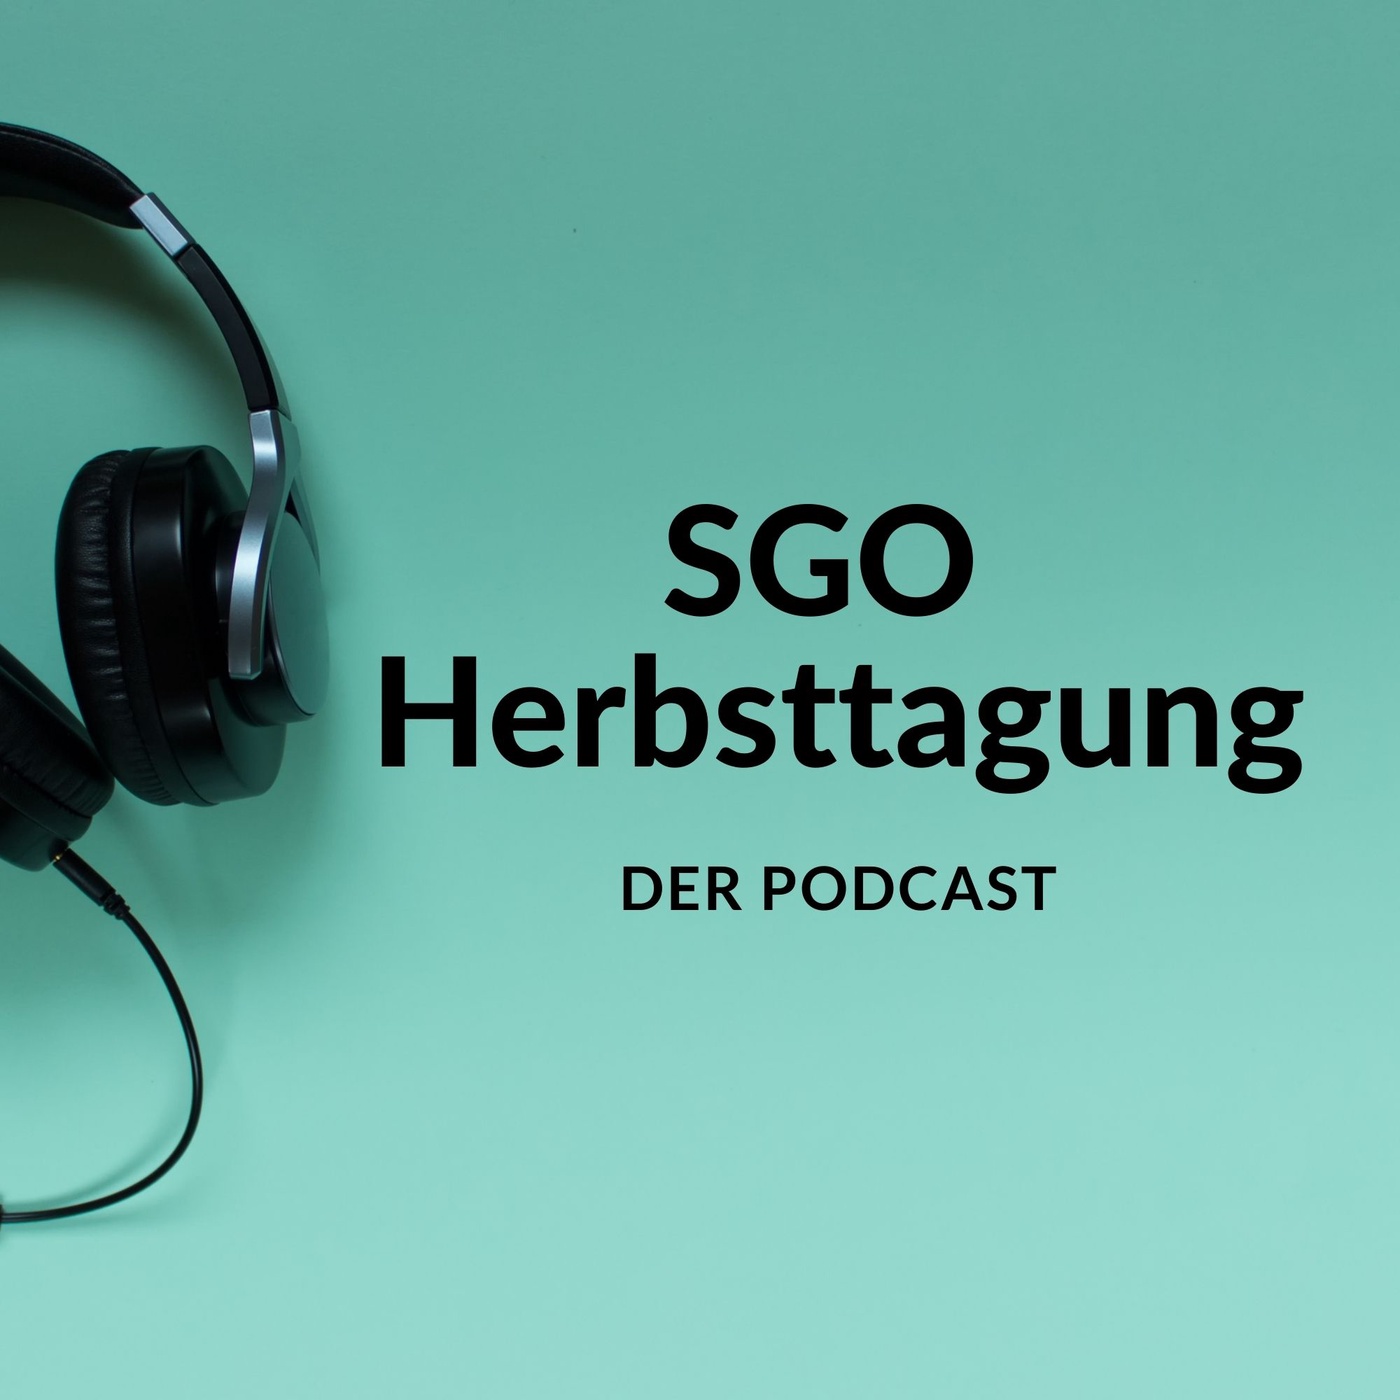 SGO Herbsttagung: Der Podcast